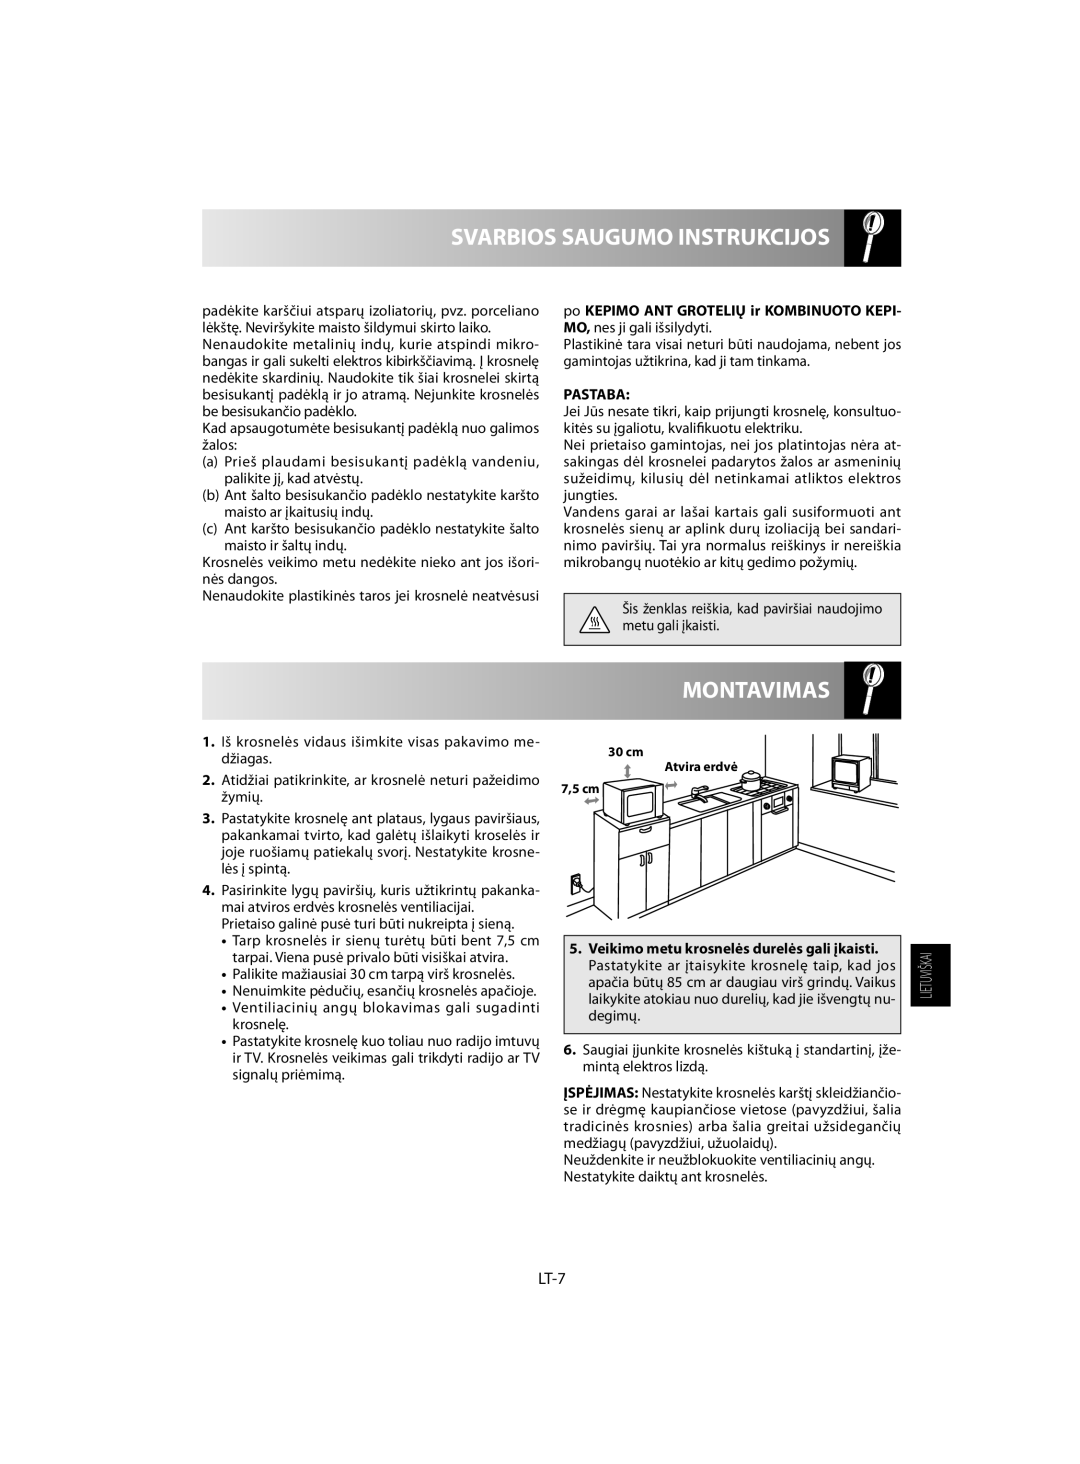 Sharp R-742, R-642 manual Montavimas, Svarbios Saugumo Instrukcijos, LT-7, Pastaba 